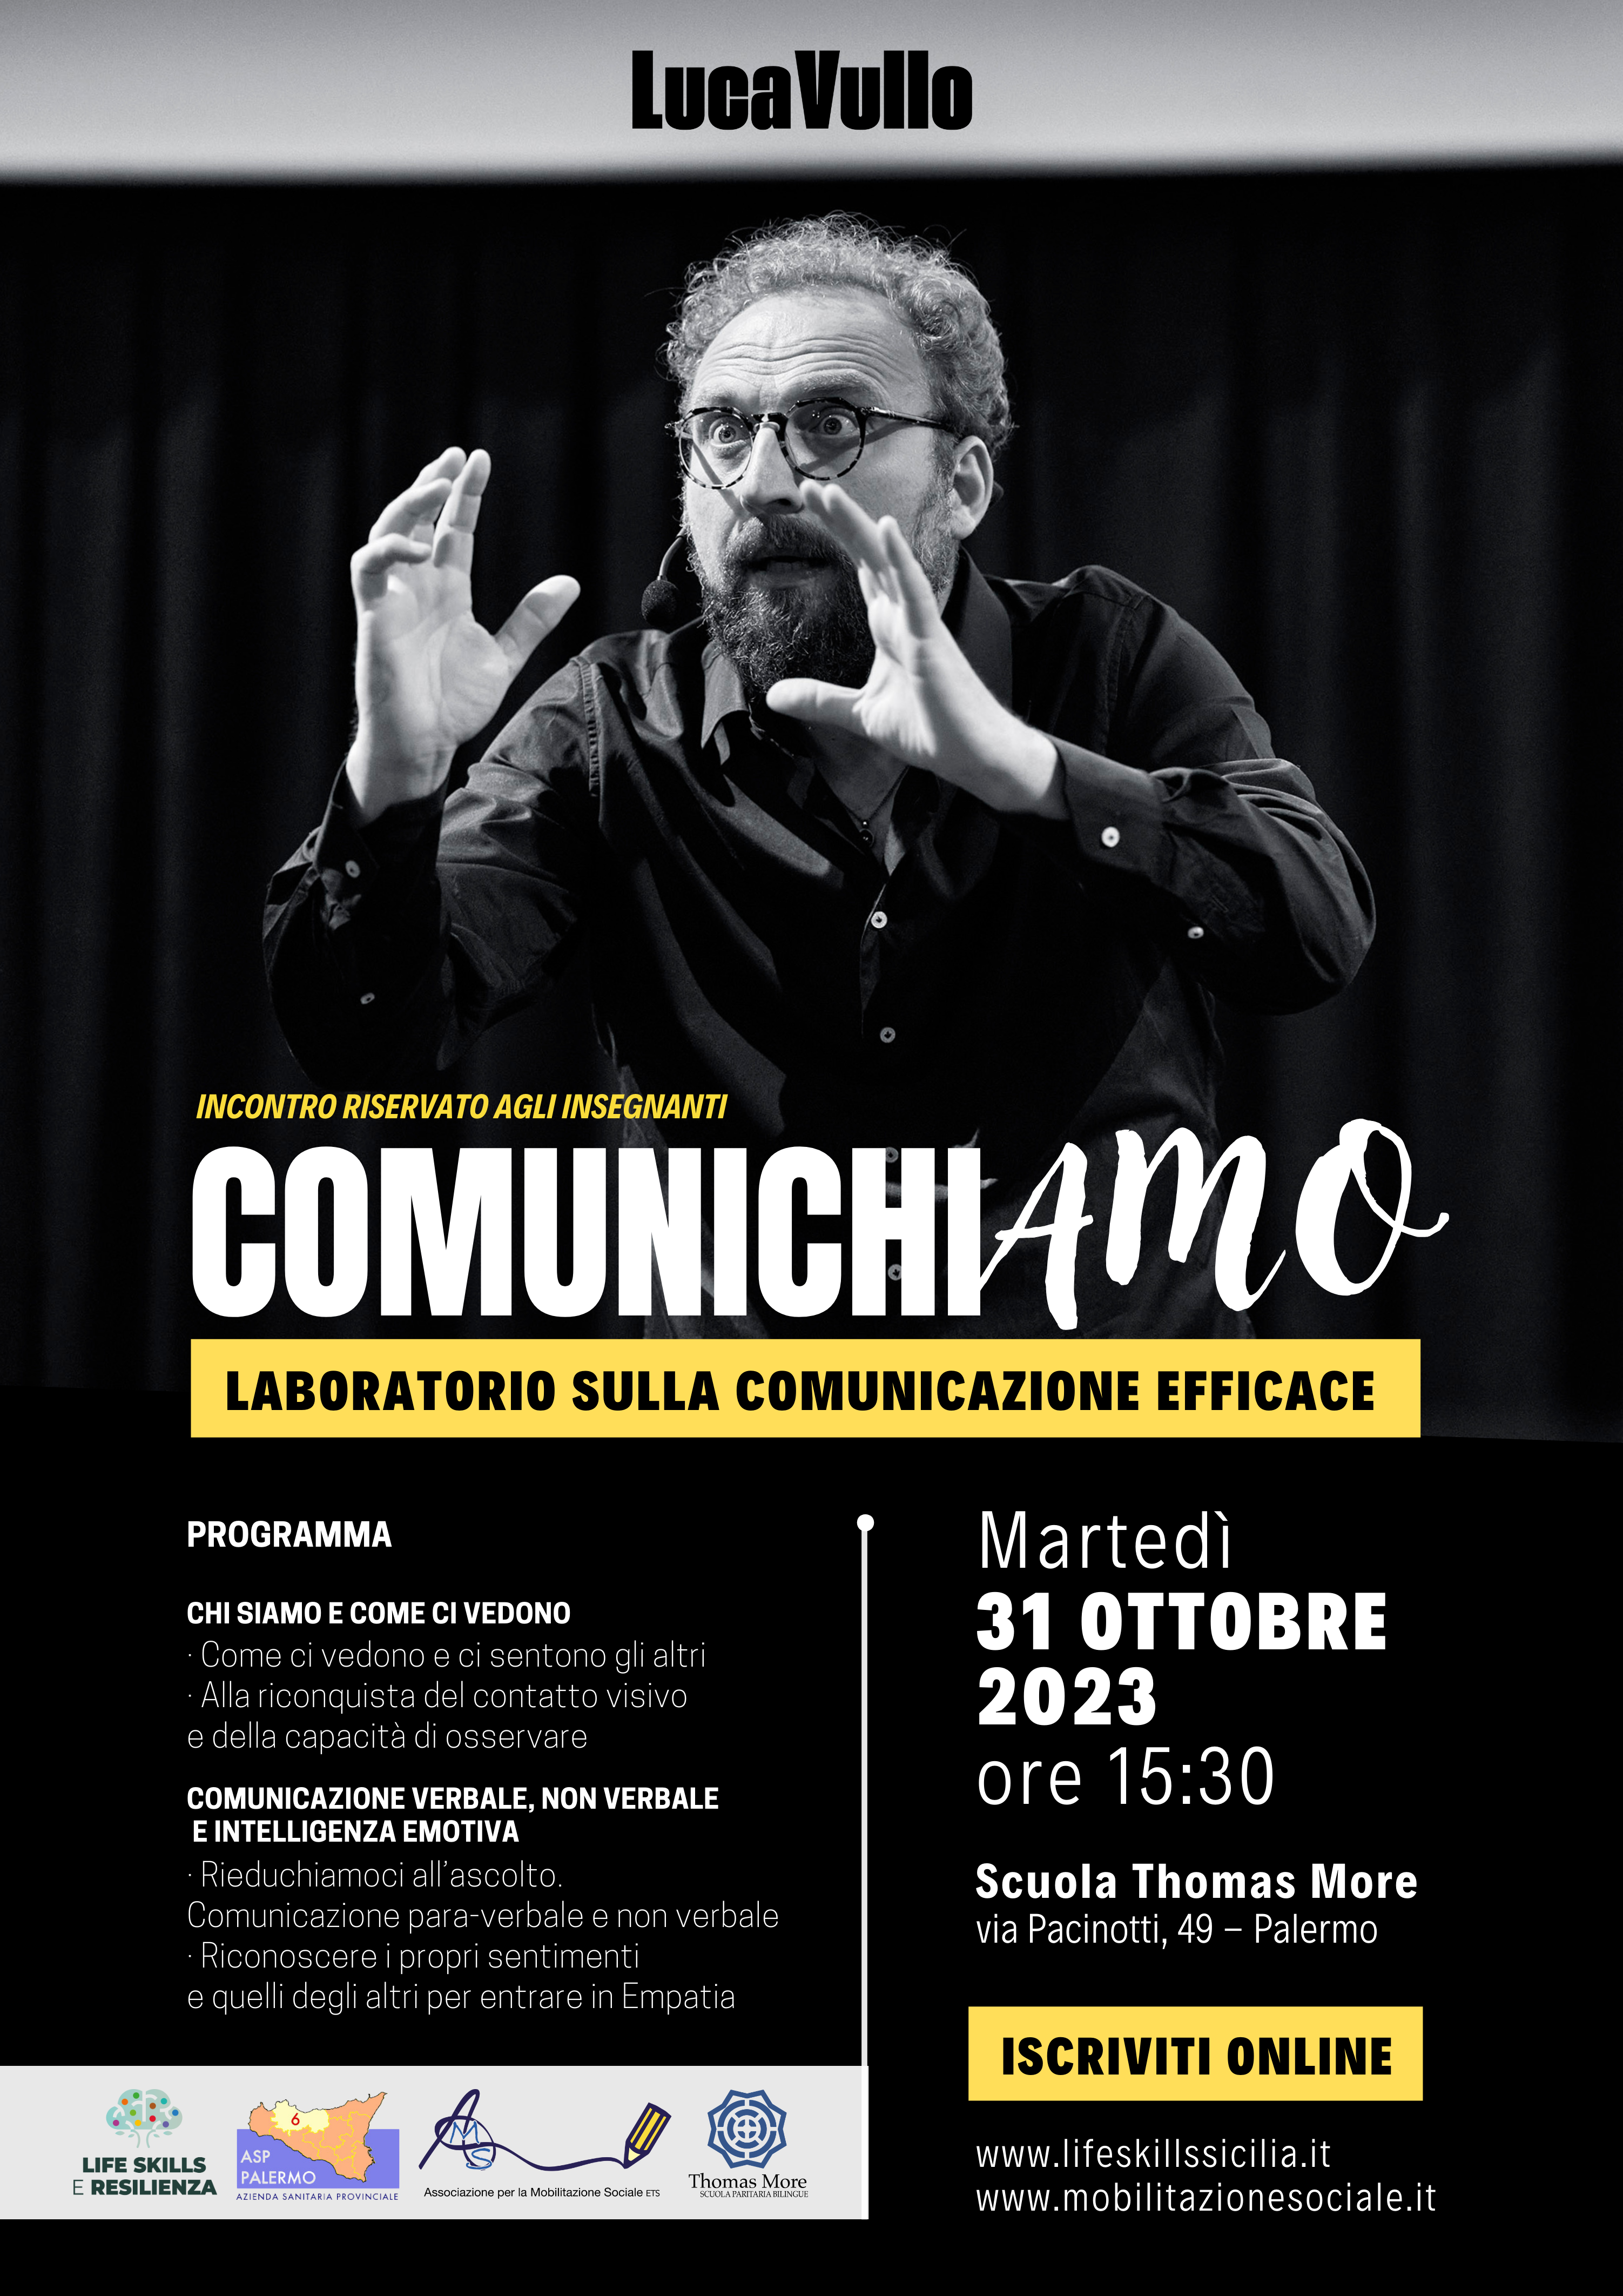 “ComunichiAmo”, con Luca Vullo il laboratorio sulla comunicazione efficace per gli insegnanti